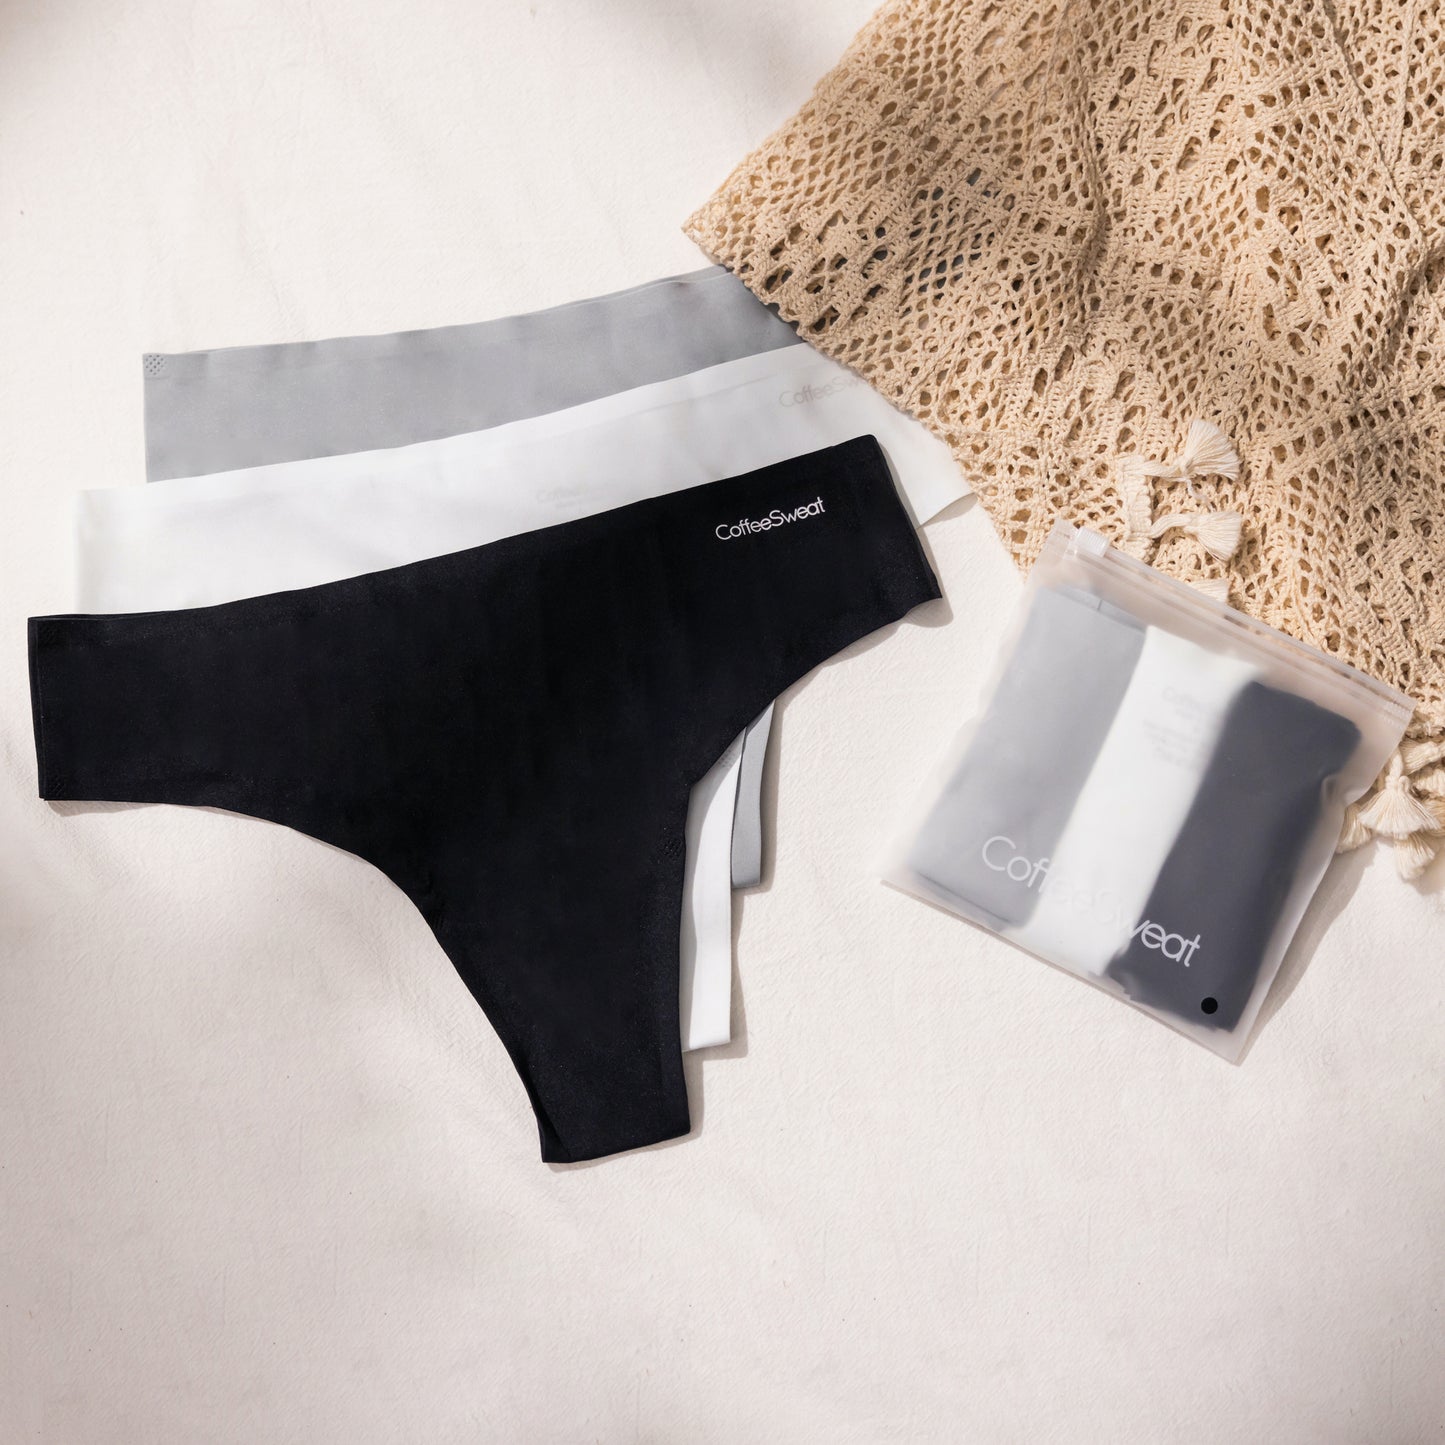 Thong Underwear - 三件裝